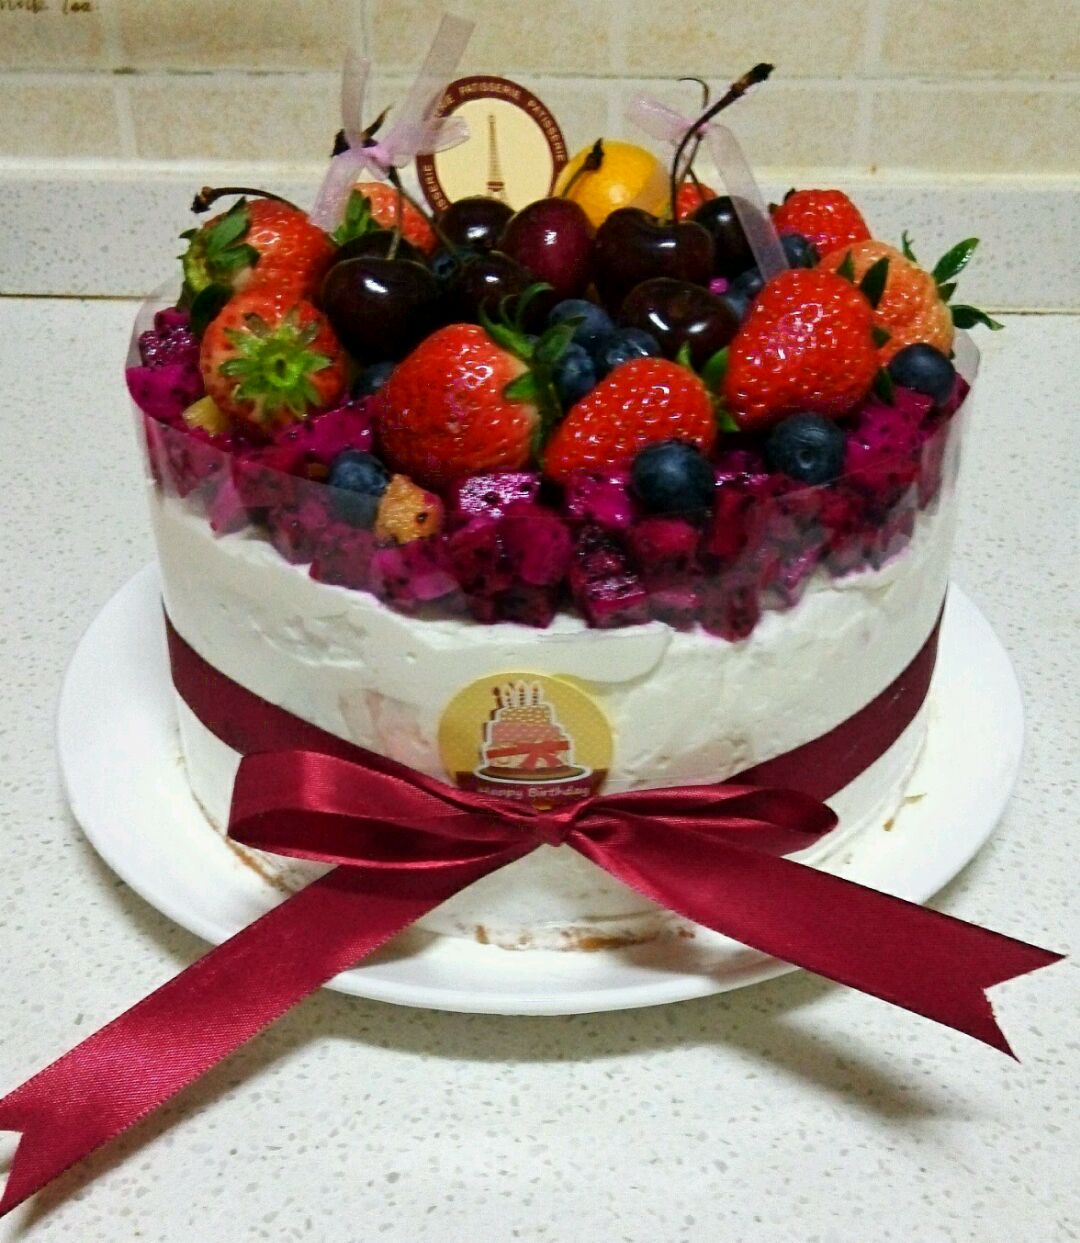 草莓生日蛋糕怎么做_草莓生日蛋糕的做法_豆果美食